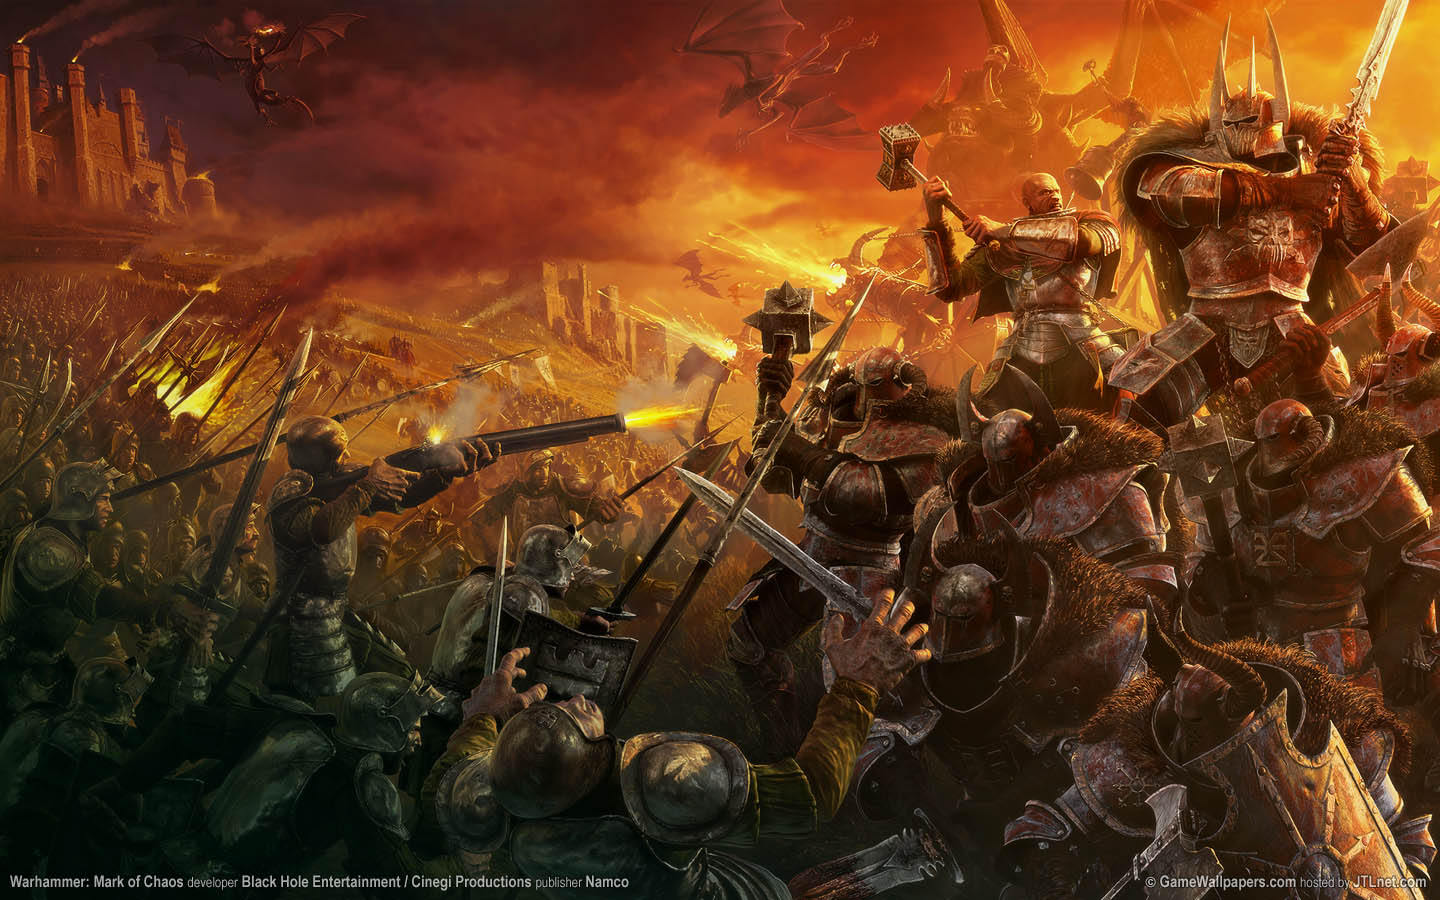 Warhammer: Mark of Chaos fond d'cran 01 1440x900